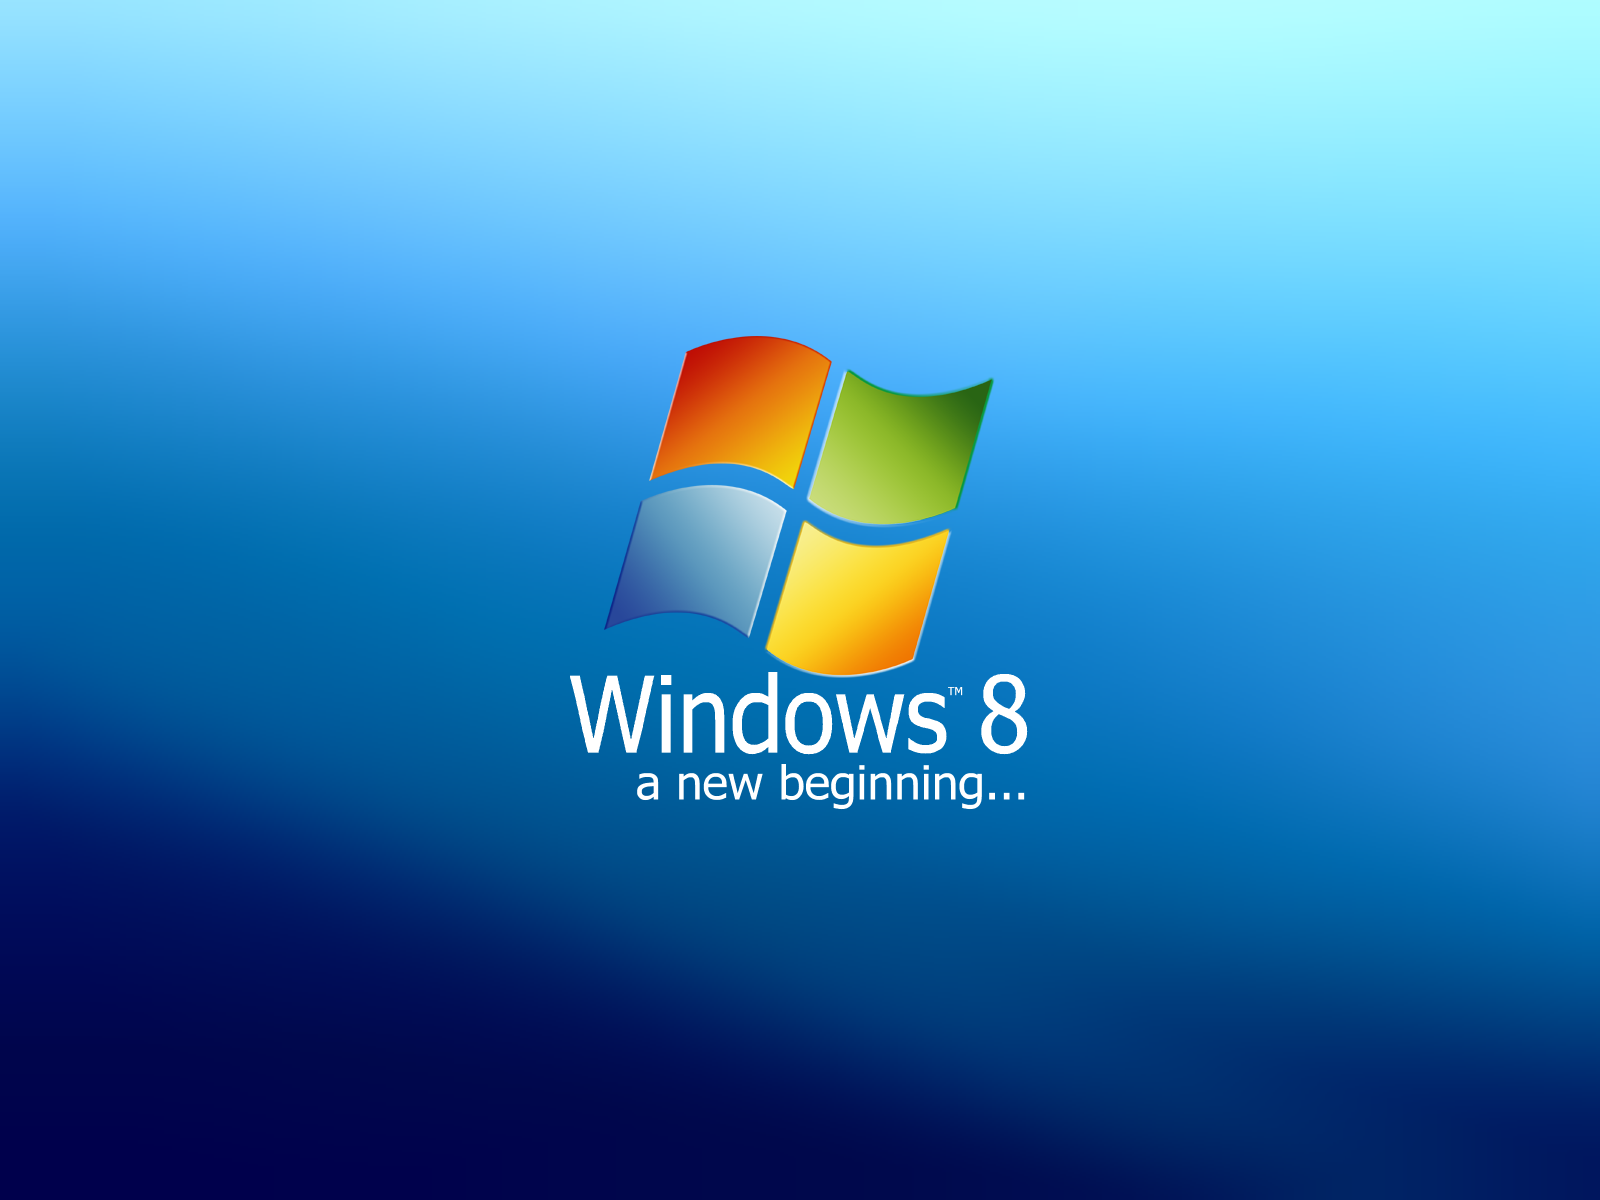 Windows 8 Themes: Tạo cảm giác phấn khởi và mạnh mẽ cho máy tính của bạn với những bộ cài đặt Windows 8 Themes. Từ những góc độ khác nhau trong đó, bạn có thể cập nhật mở rộng đặc điểm của Windows 8 với các chủ đề tiên tiến và hiện đại nhất.